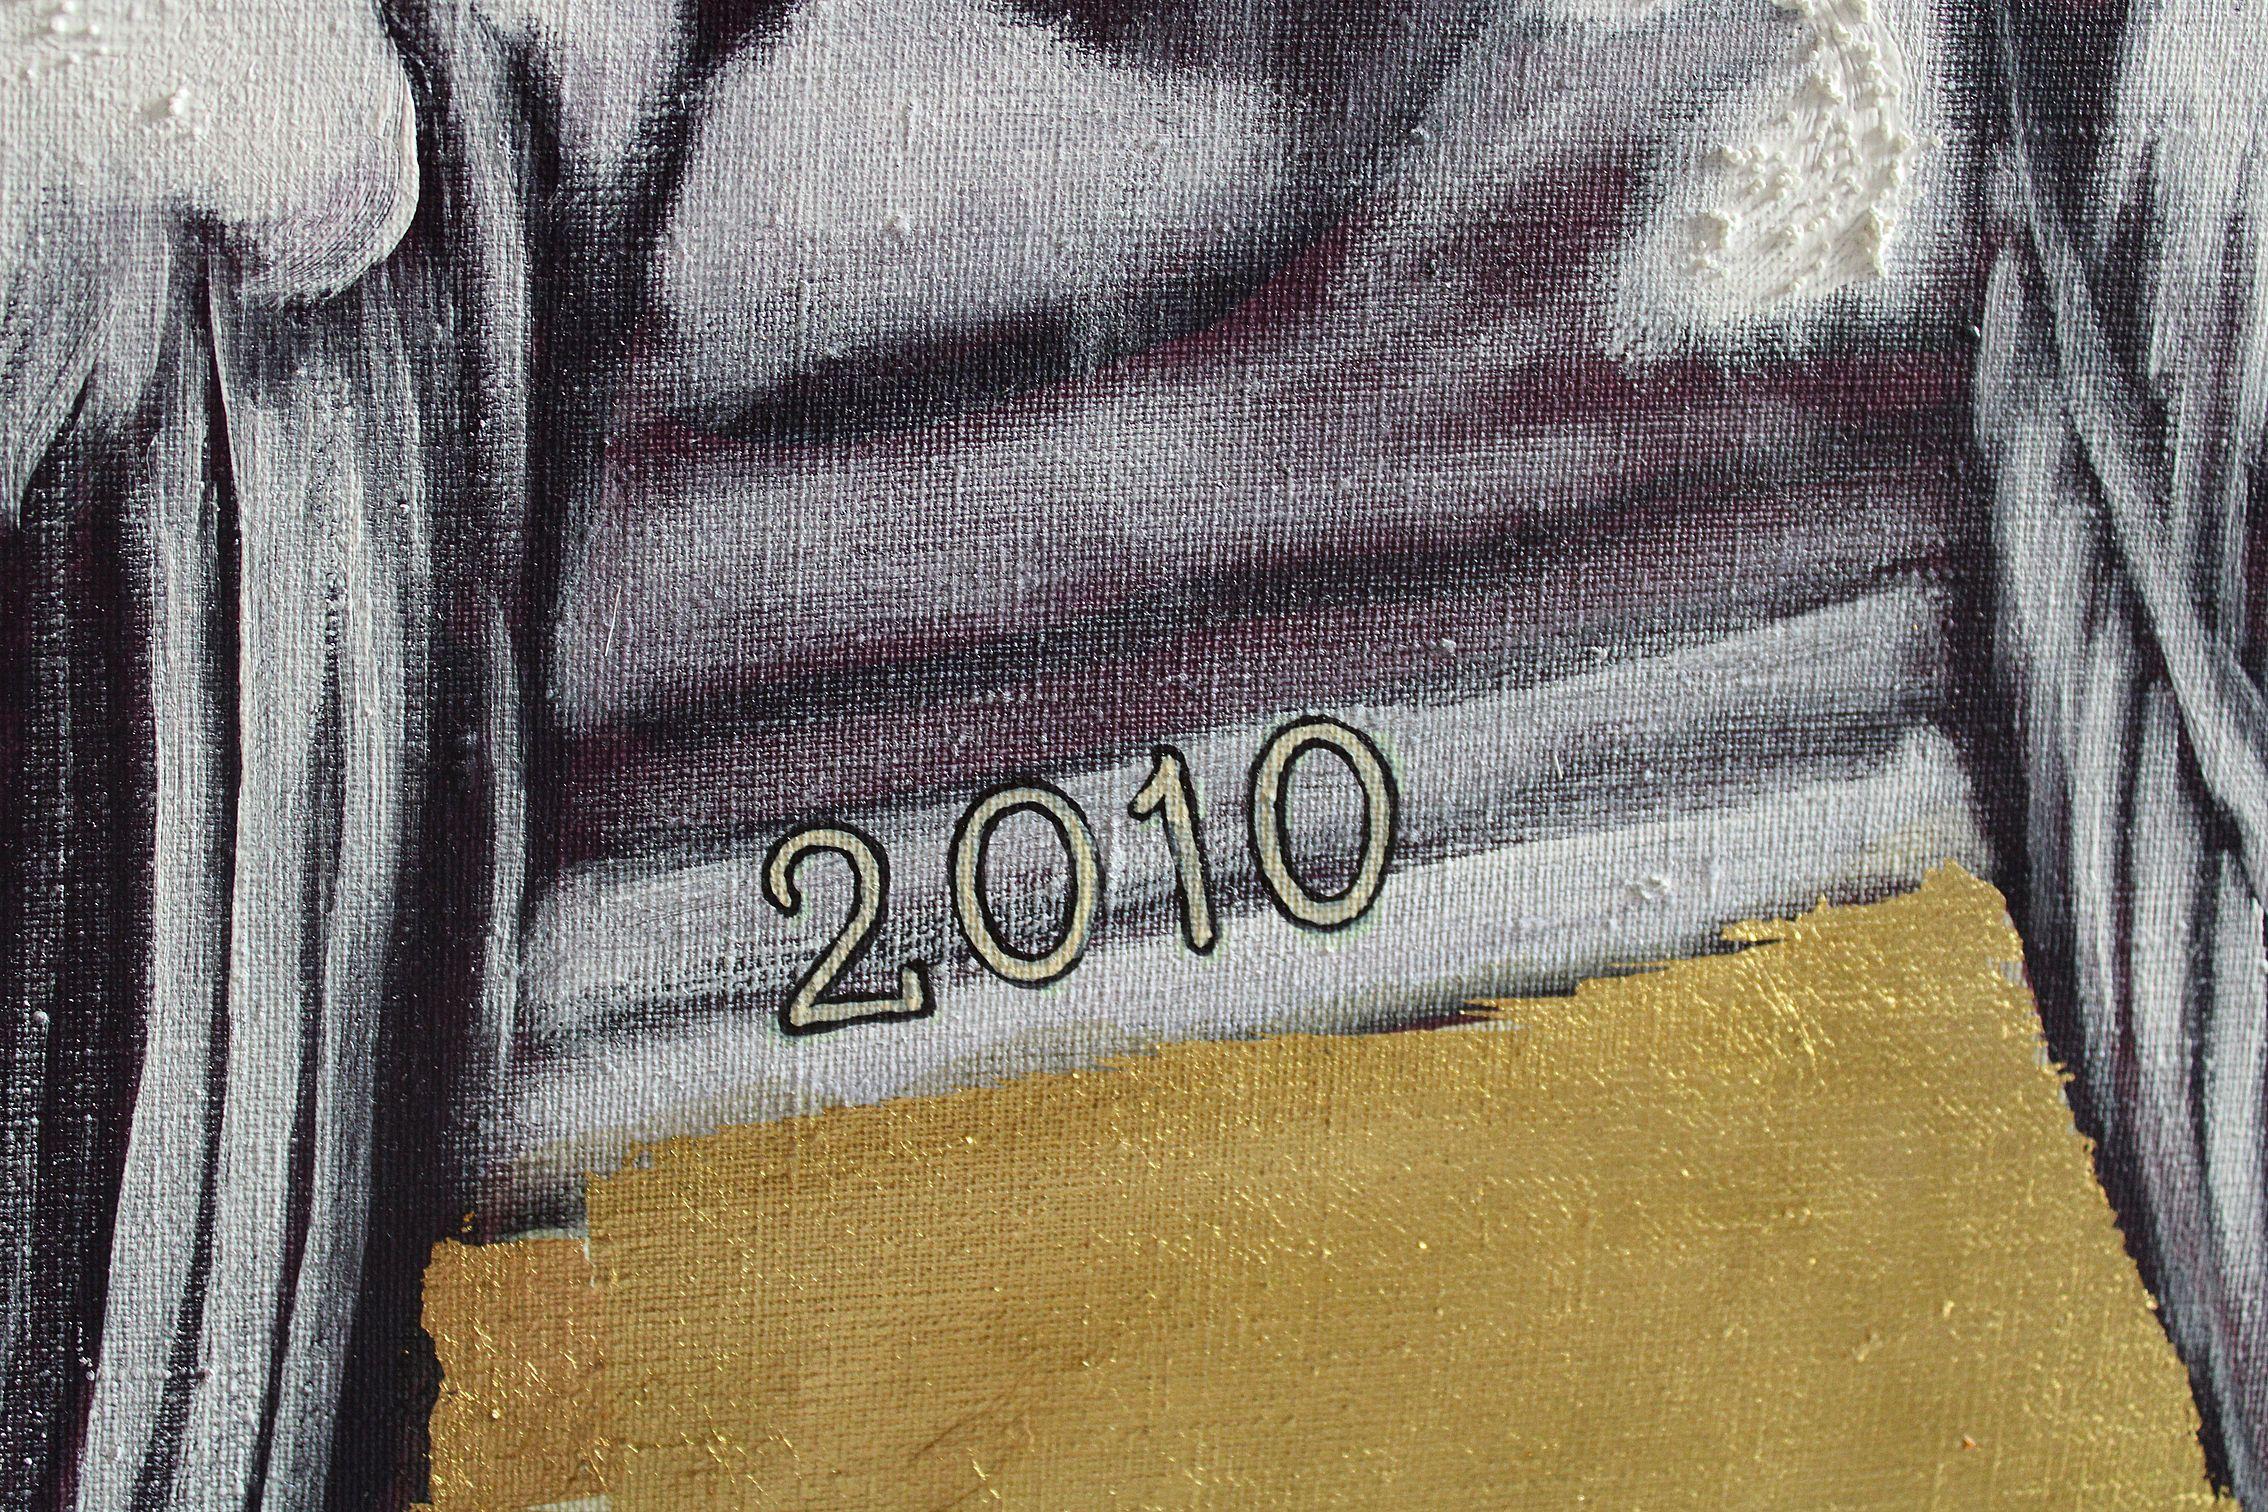 Impotent und aggressiv

2010, Leinwand, Mischtechnik, 140x120 cm

Juris Utāns (1959-2022)

war ein lettischer Maler. Arbeitet auf dem Gebiet des kritischen Realismus, der sozial aktiven und politischen Kunst. Die Werke von Juris Utans zeichnen sich